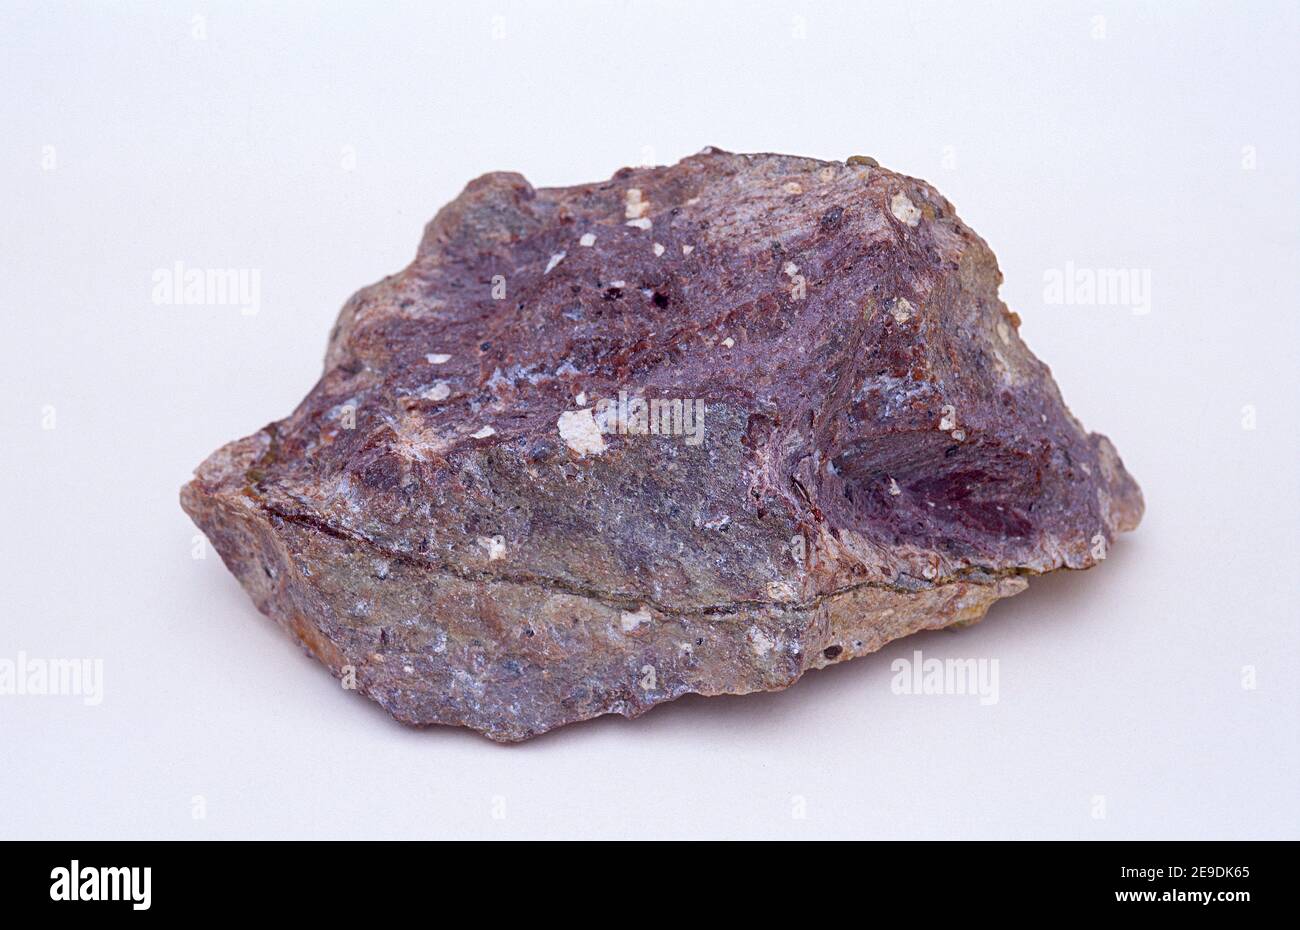 Rhyolit ist ein vulkanisches Gestein, das reich an Kieselsäure ist. Probe. Stockfoto